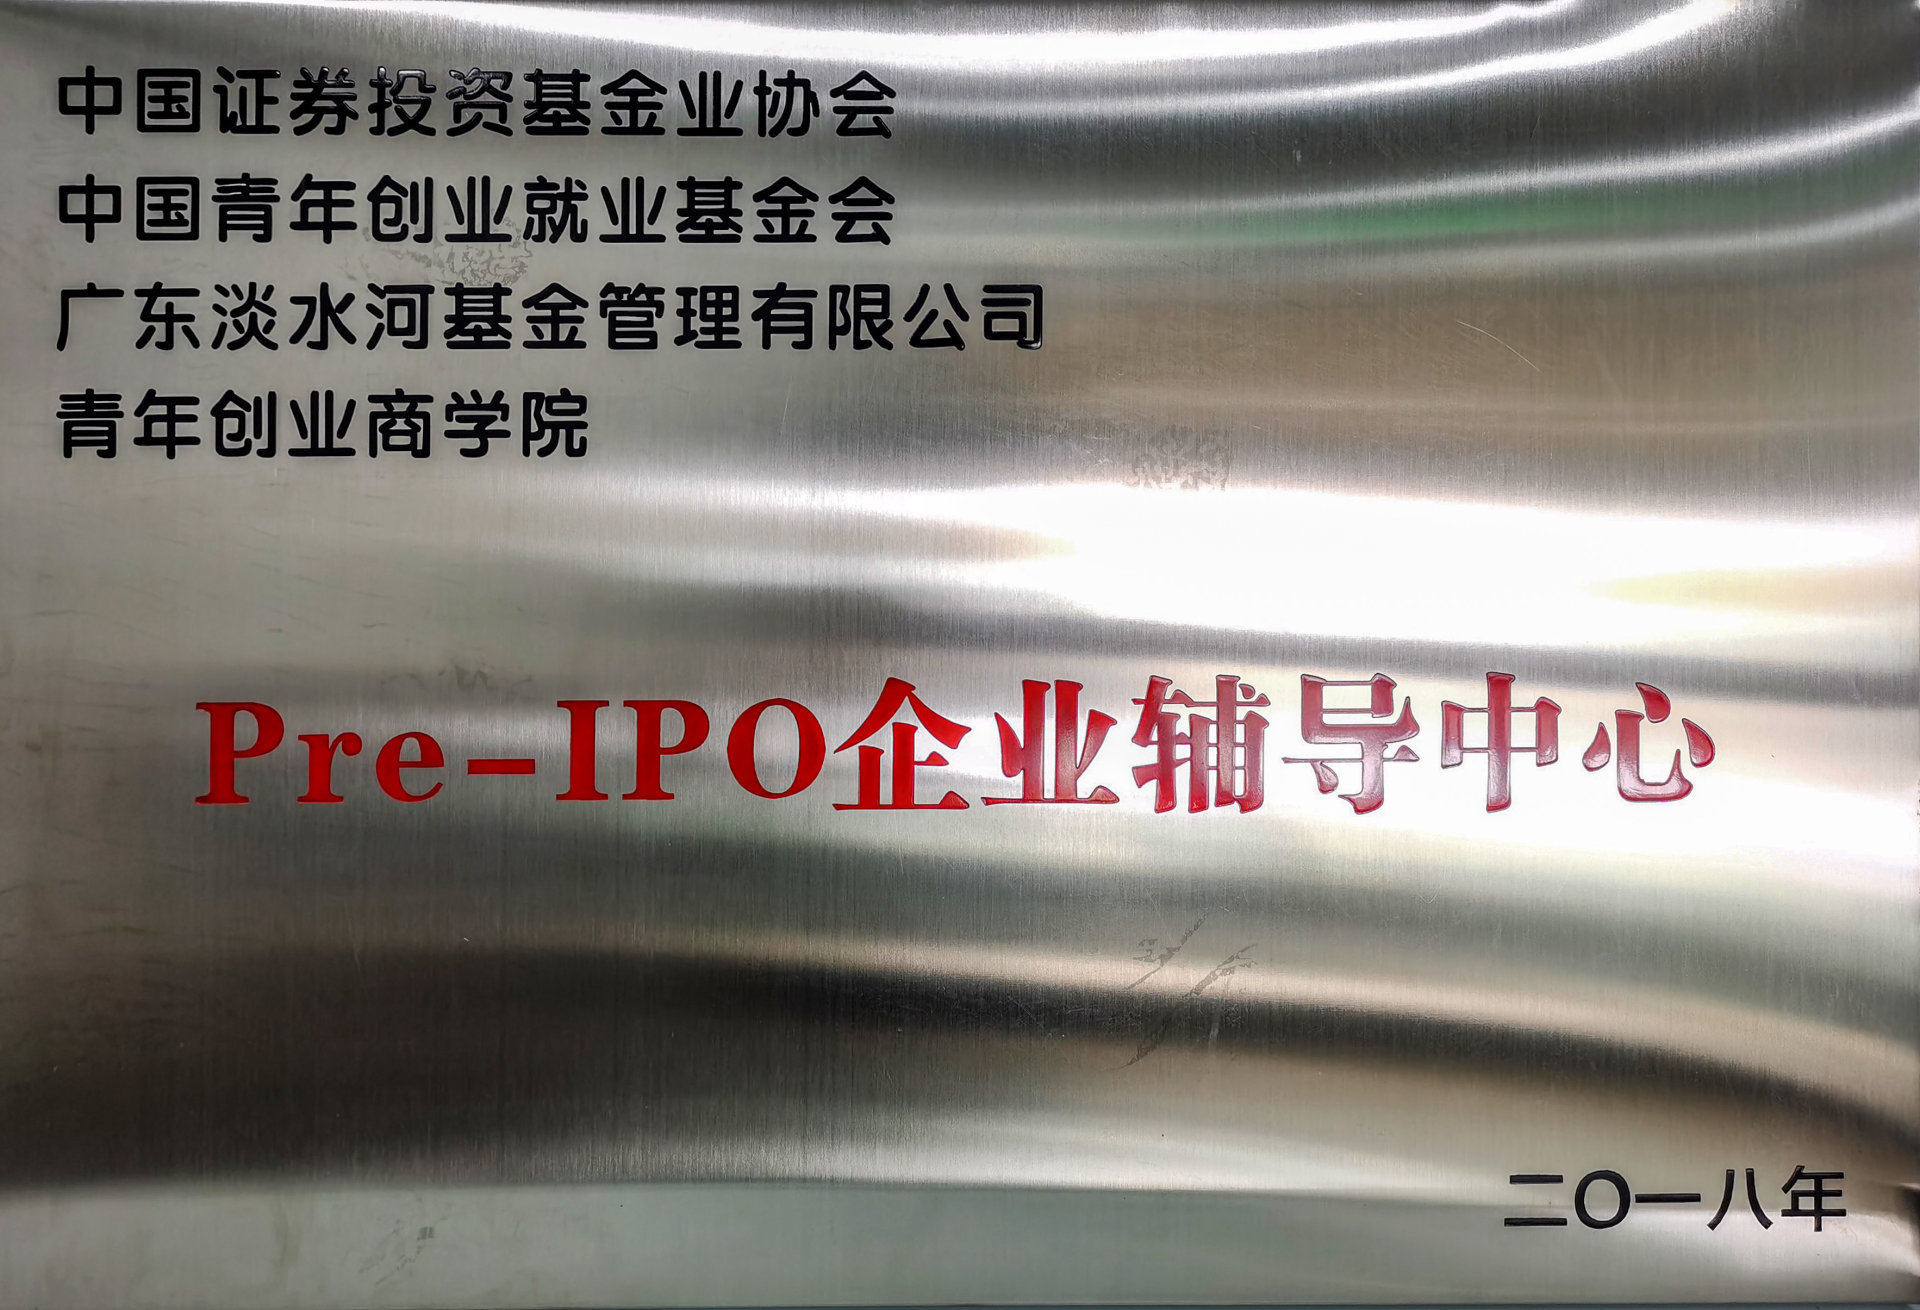 Pre-IPO企业辅导中心